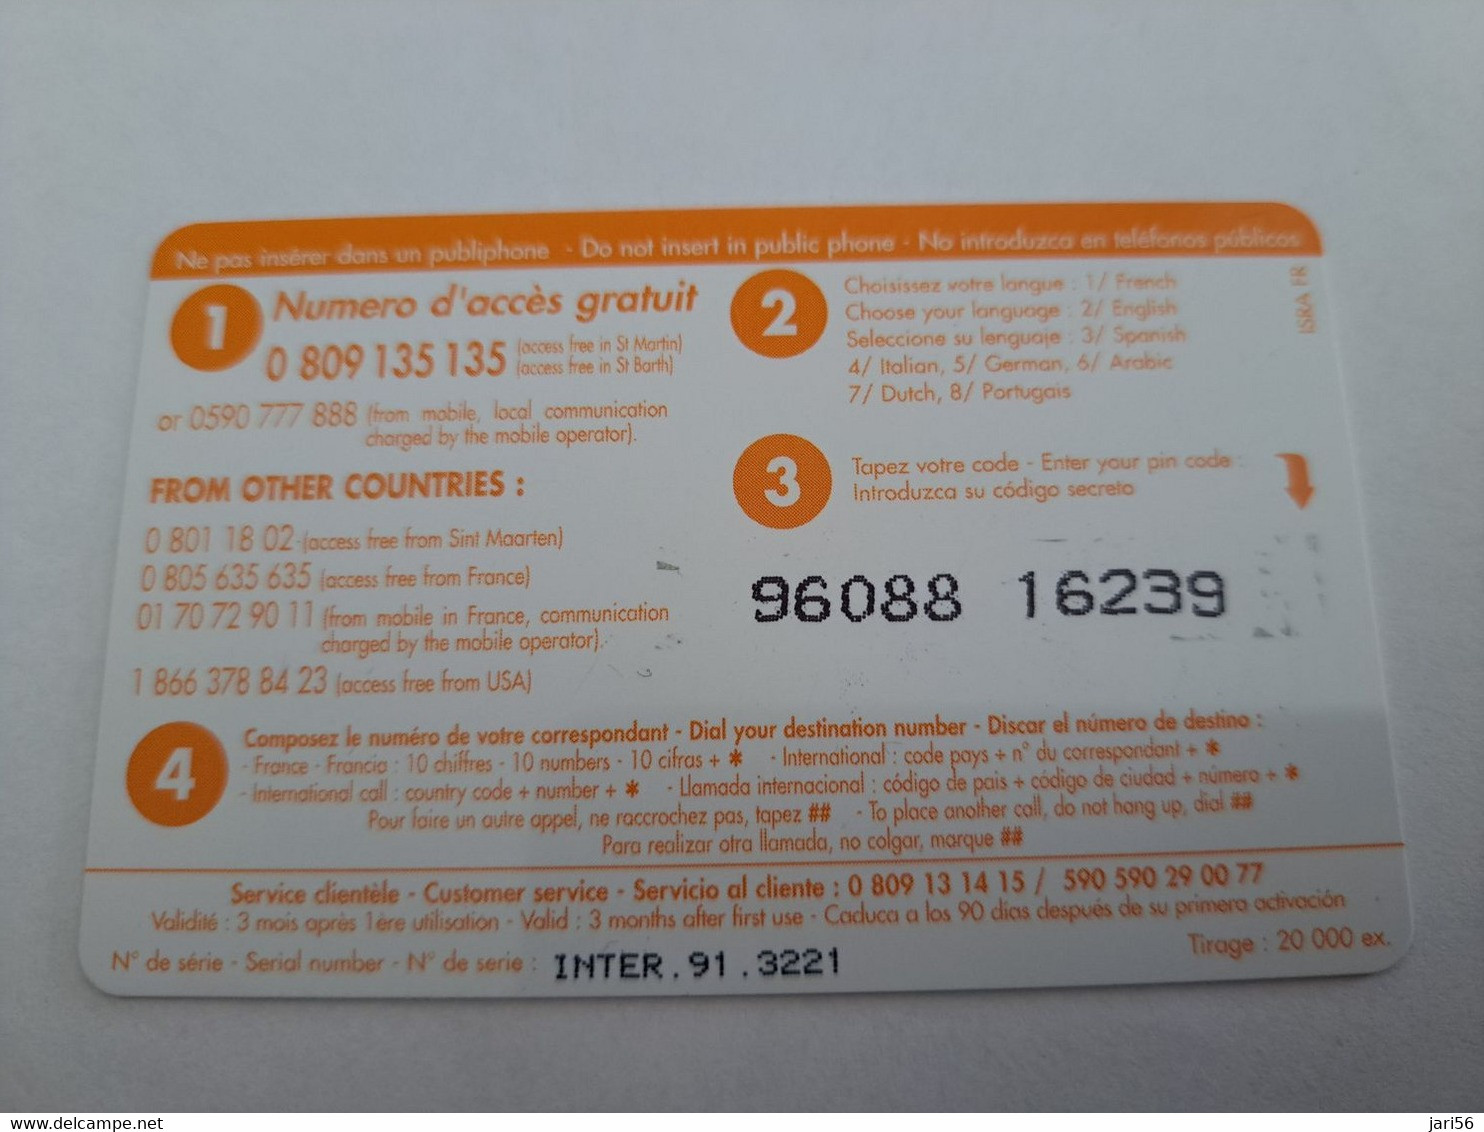 ST MARTIN / INTERCARD  3 EURO  OCTROI DE COLE BAY           NO 091   Fine Used Card    ** 10782 ** - Antille (Francesi)